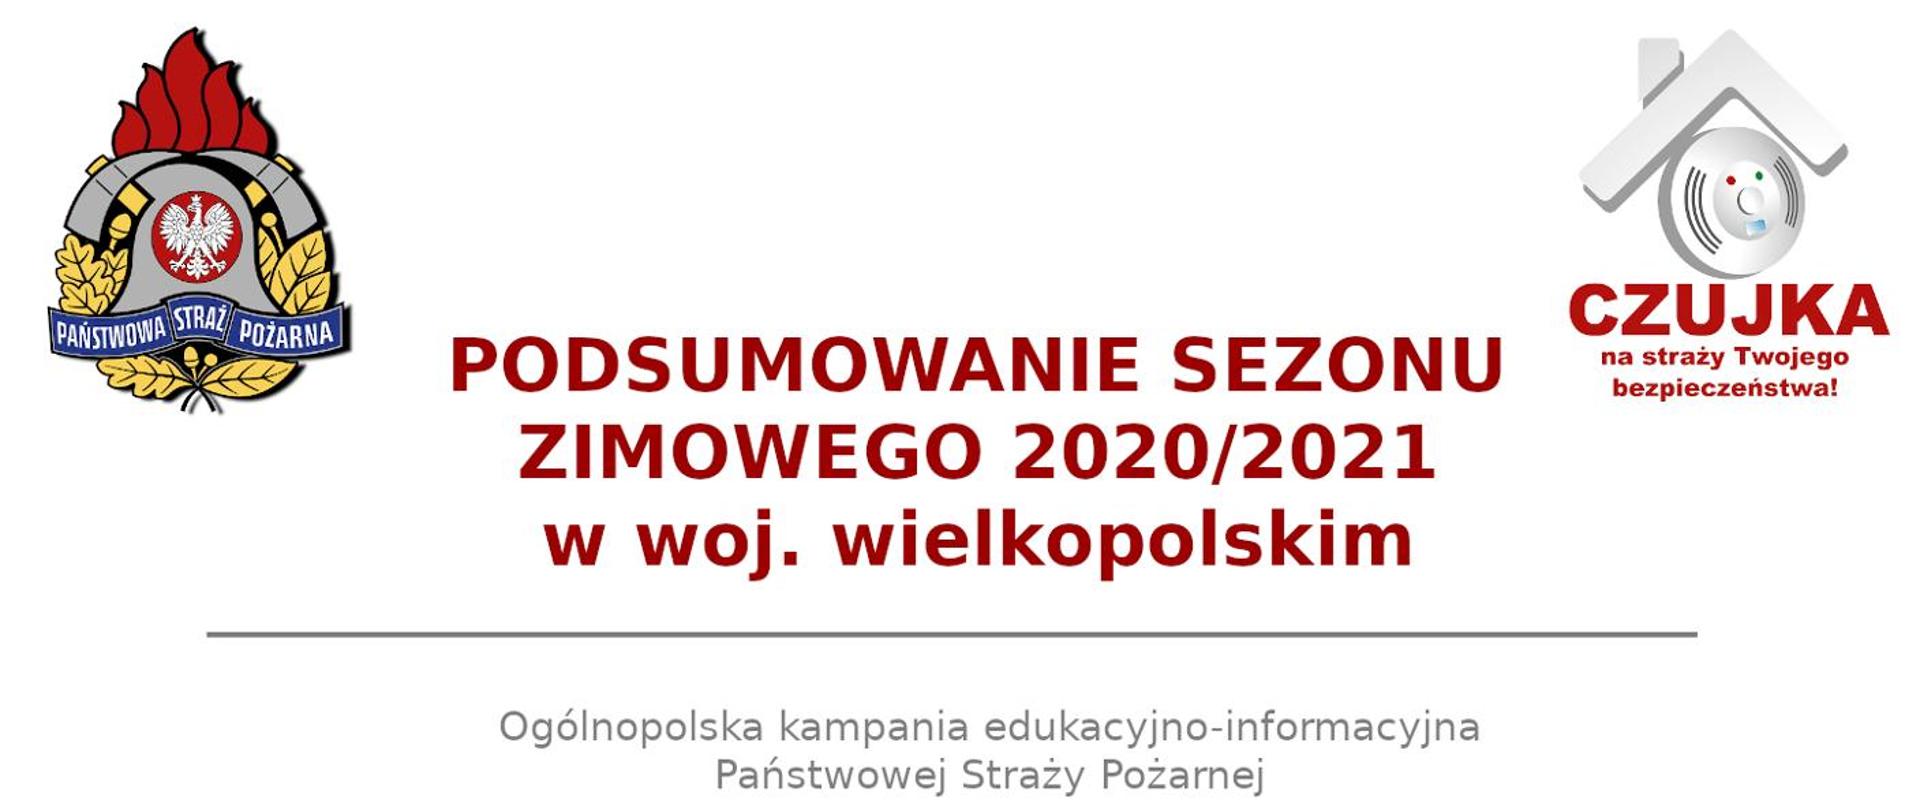 WIELKOPOLSCY STRAŻACY PODSUMOWALI SEZON GRZEWCZY 2020/2021